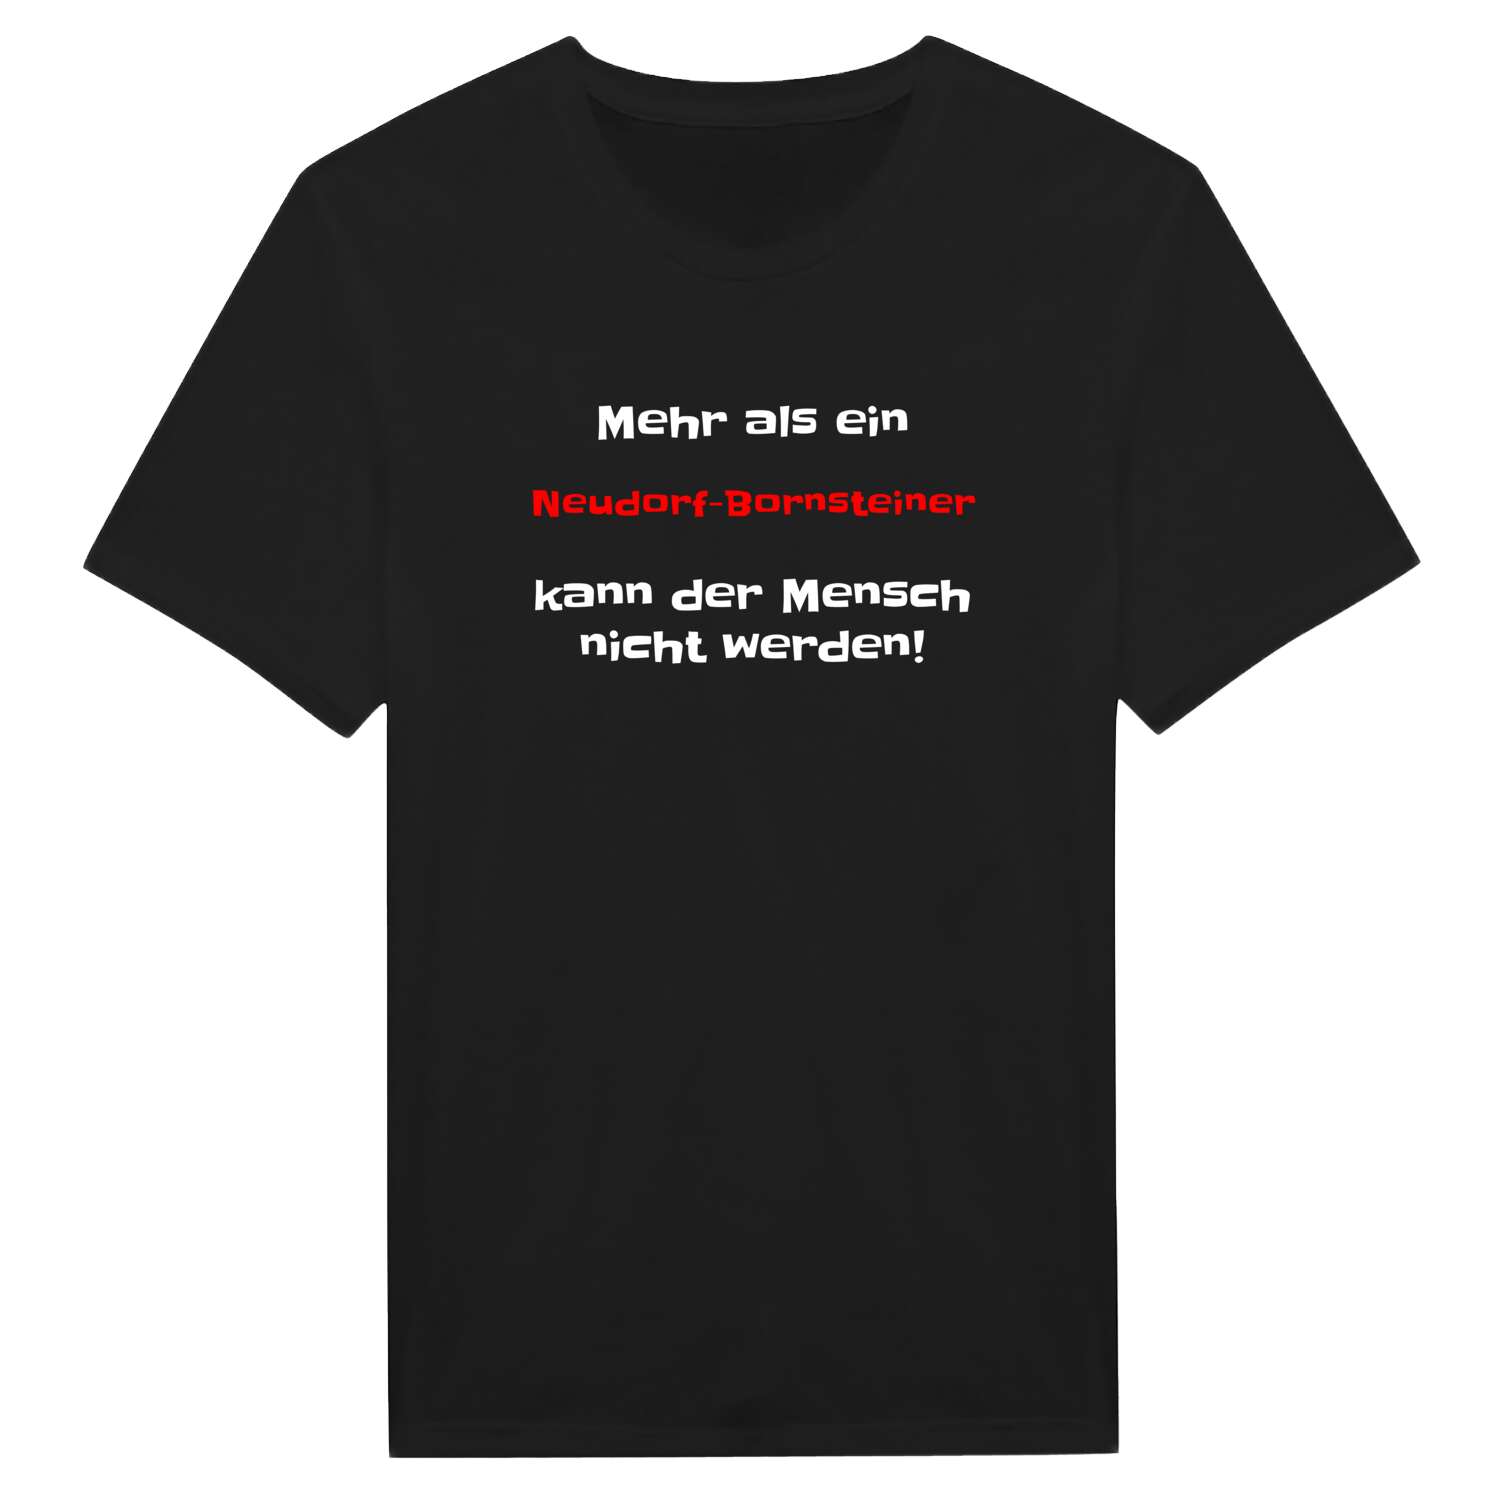 Neudorf-Bornstein T-Shirt »Mehr als ein«